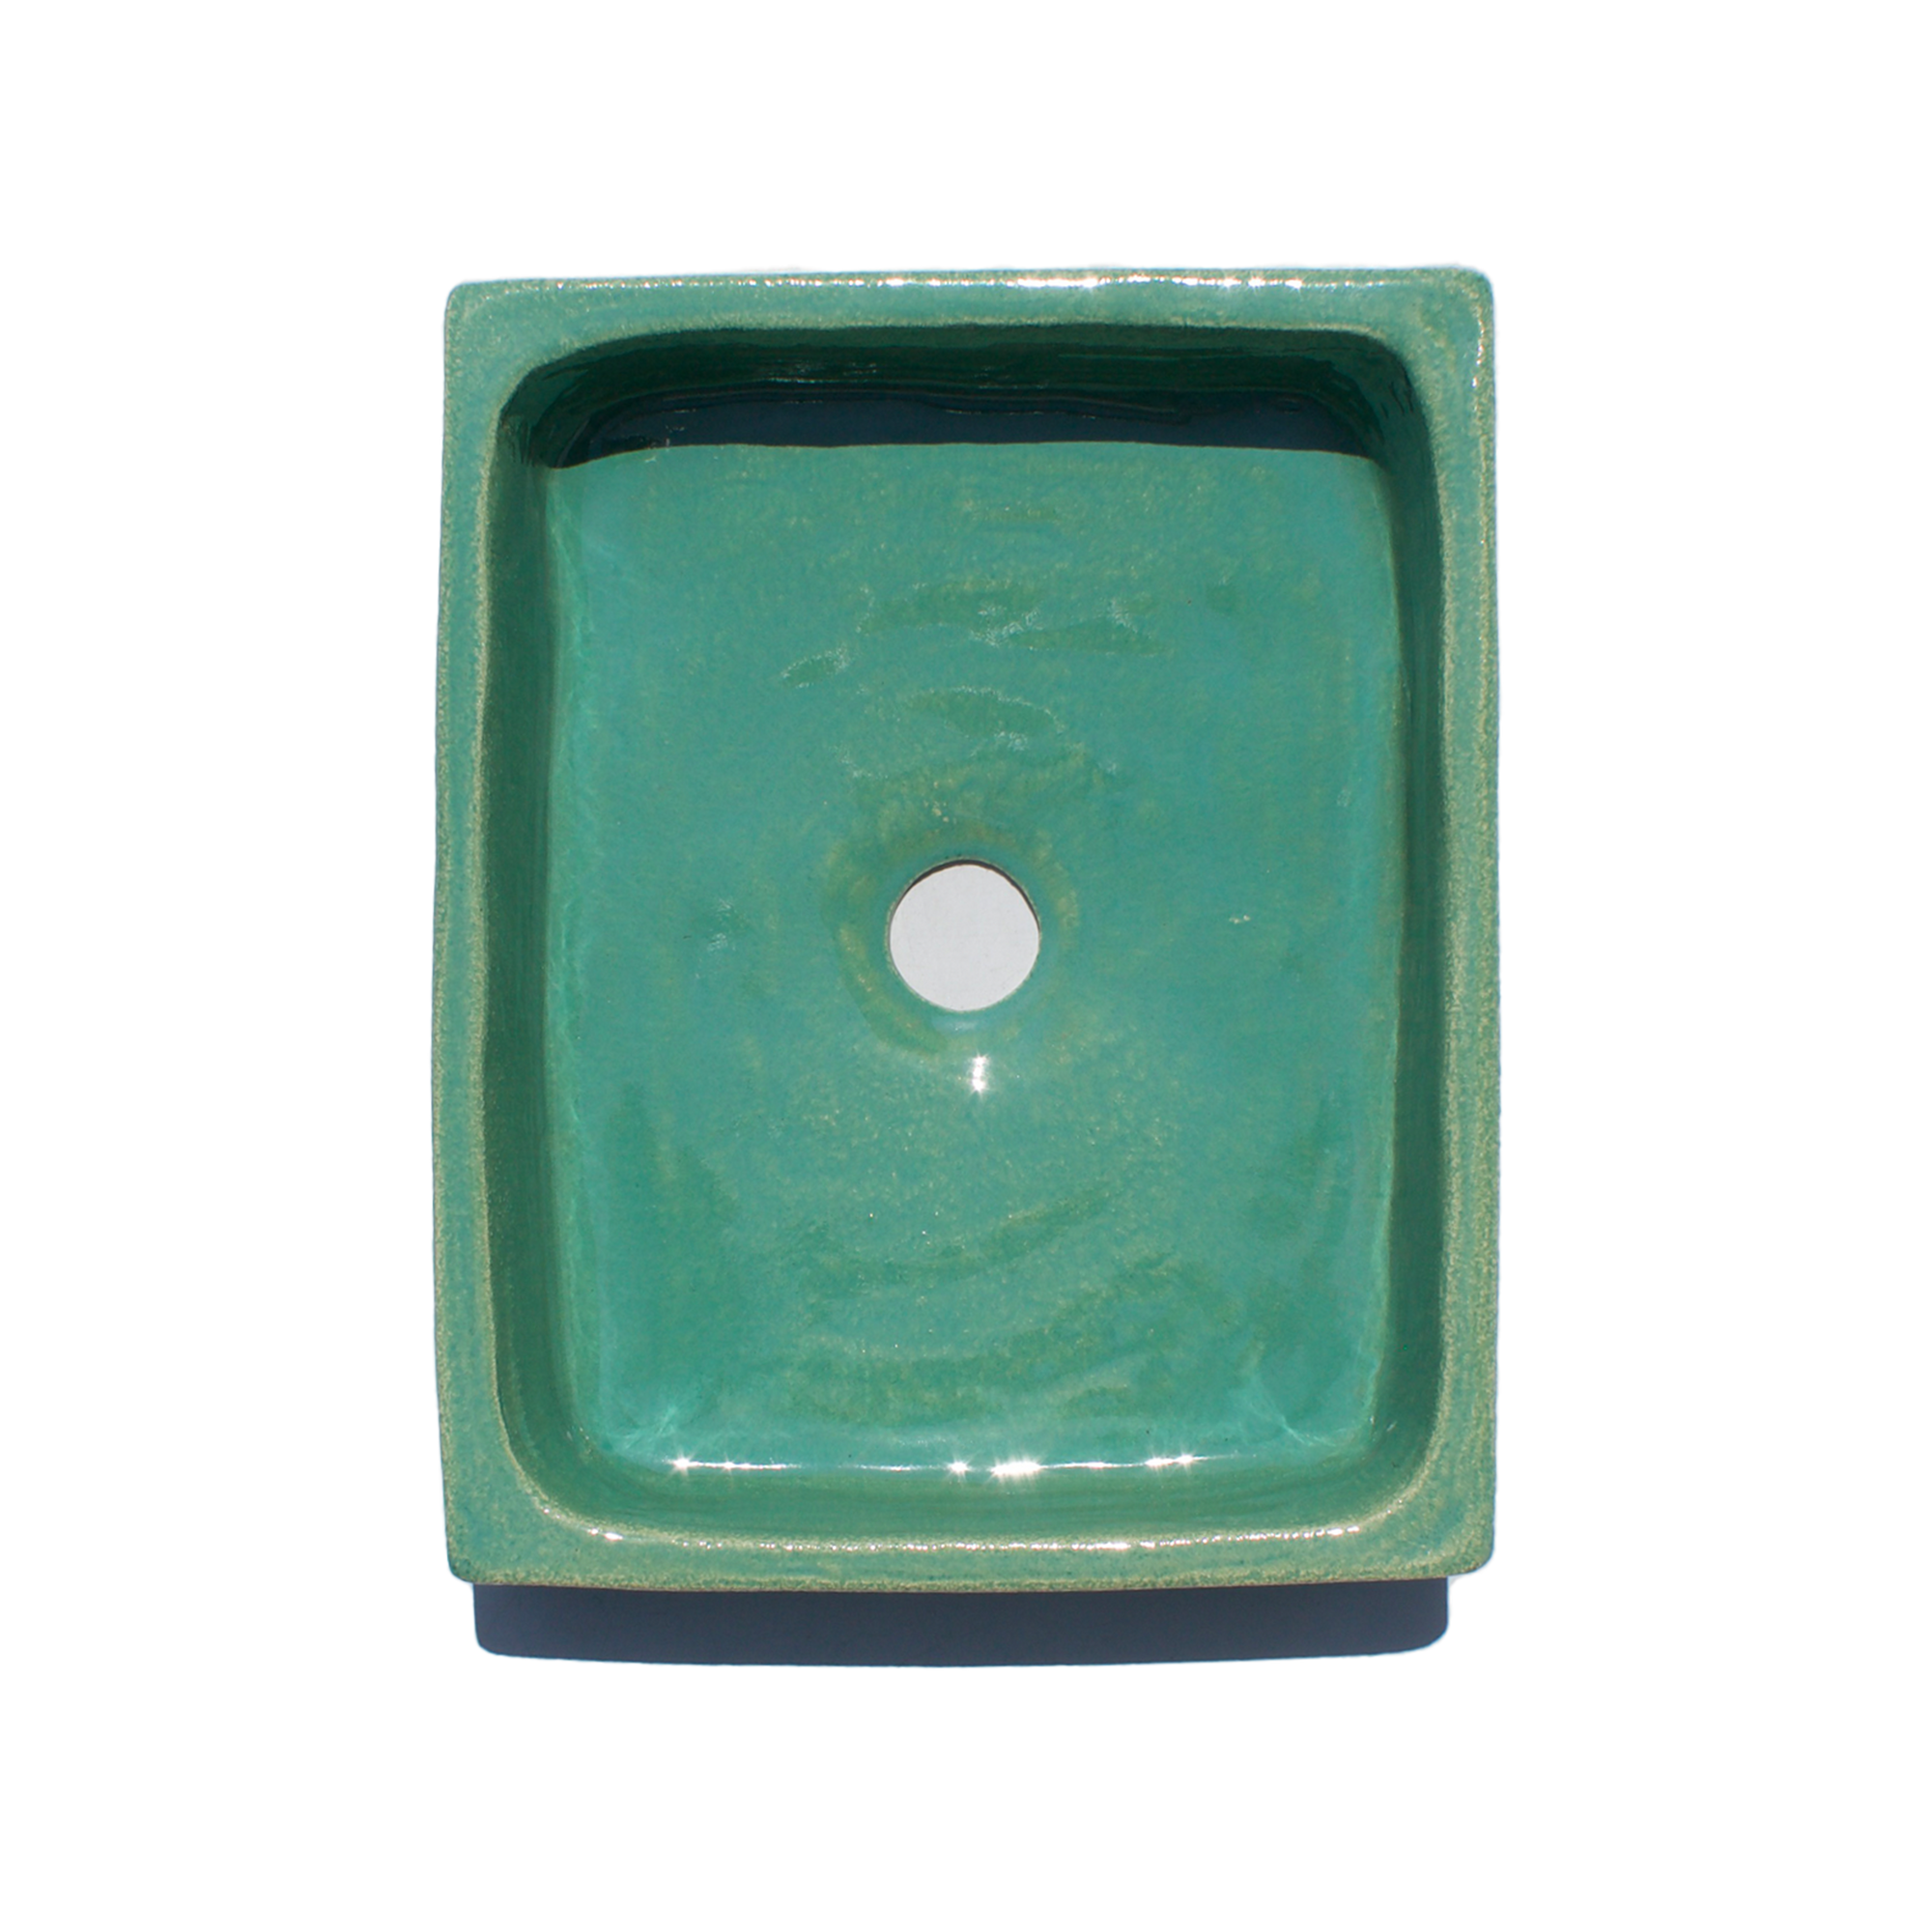 Santorini Green Glazed Terracotta Sink